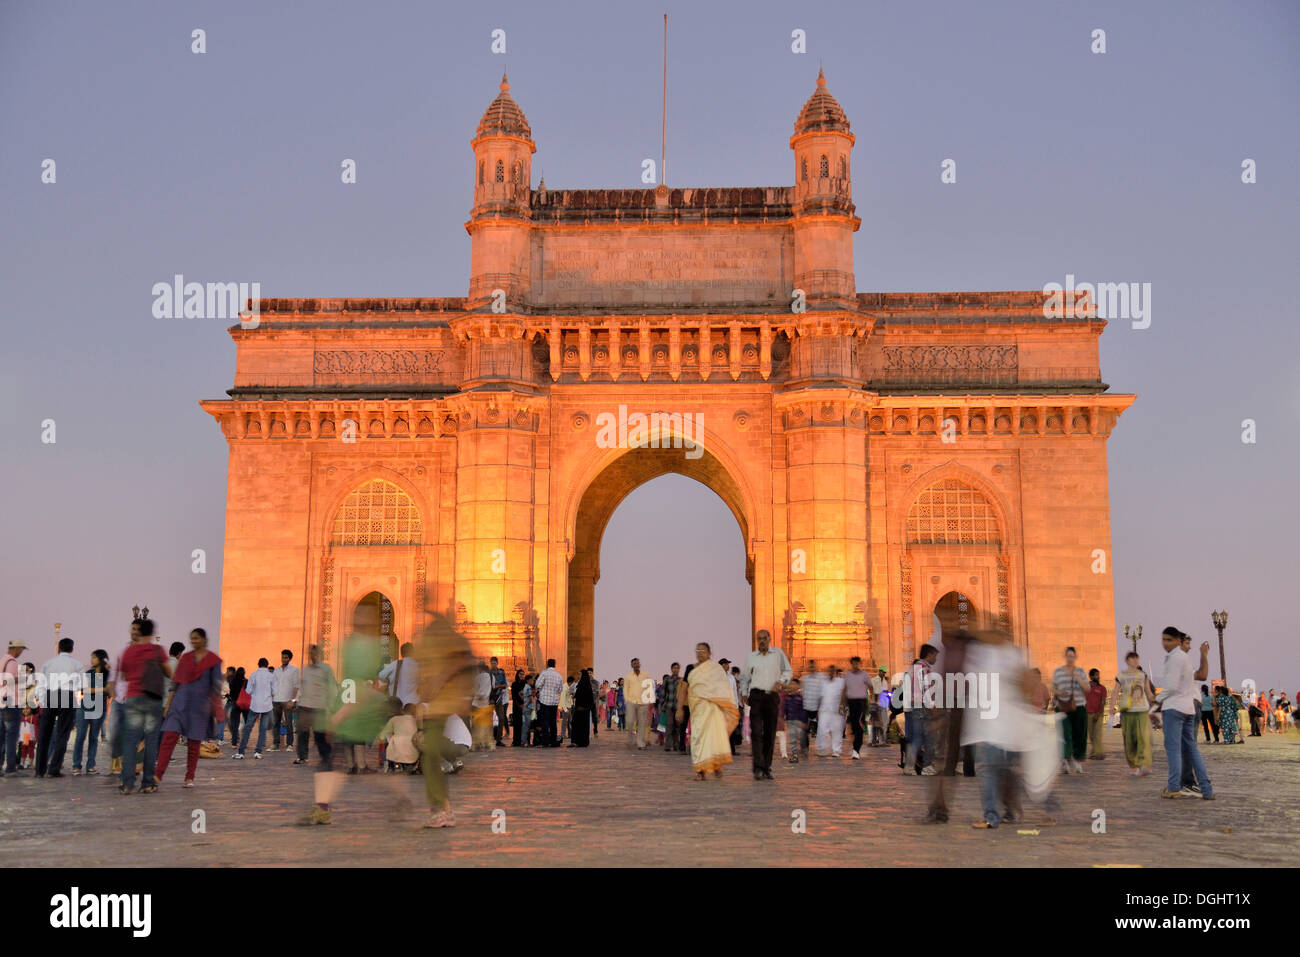 Gateway of India monument, landmark of Mumbai, Mumbai, Maharashtra, India Stock Photo